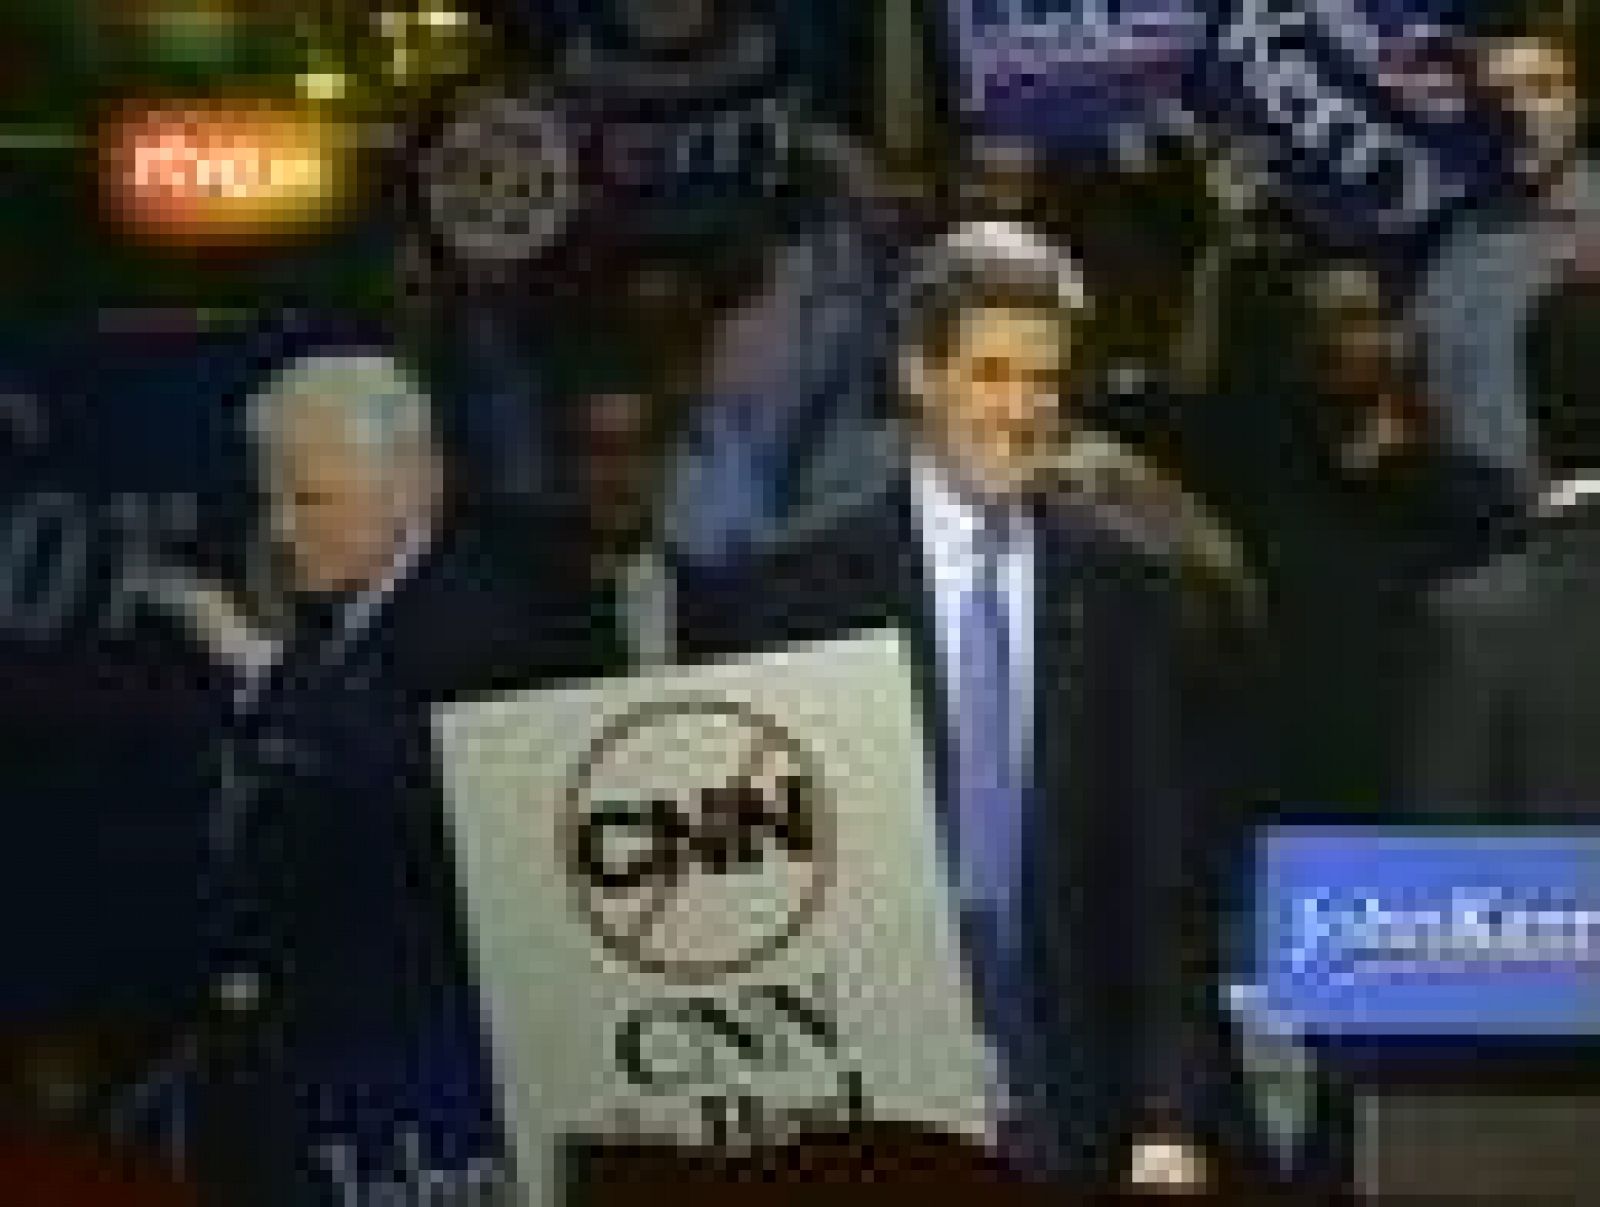 El senador Kerry gana en nueve de los diez estados de las primarias demócratas del Supermartes de 2004, entre ellos Nueva York y California. Su único rival, John Edawards, abandona la carrera electoral.